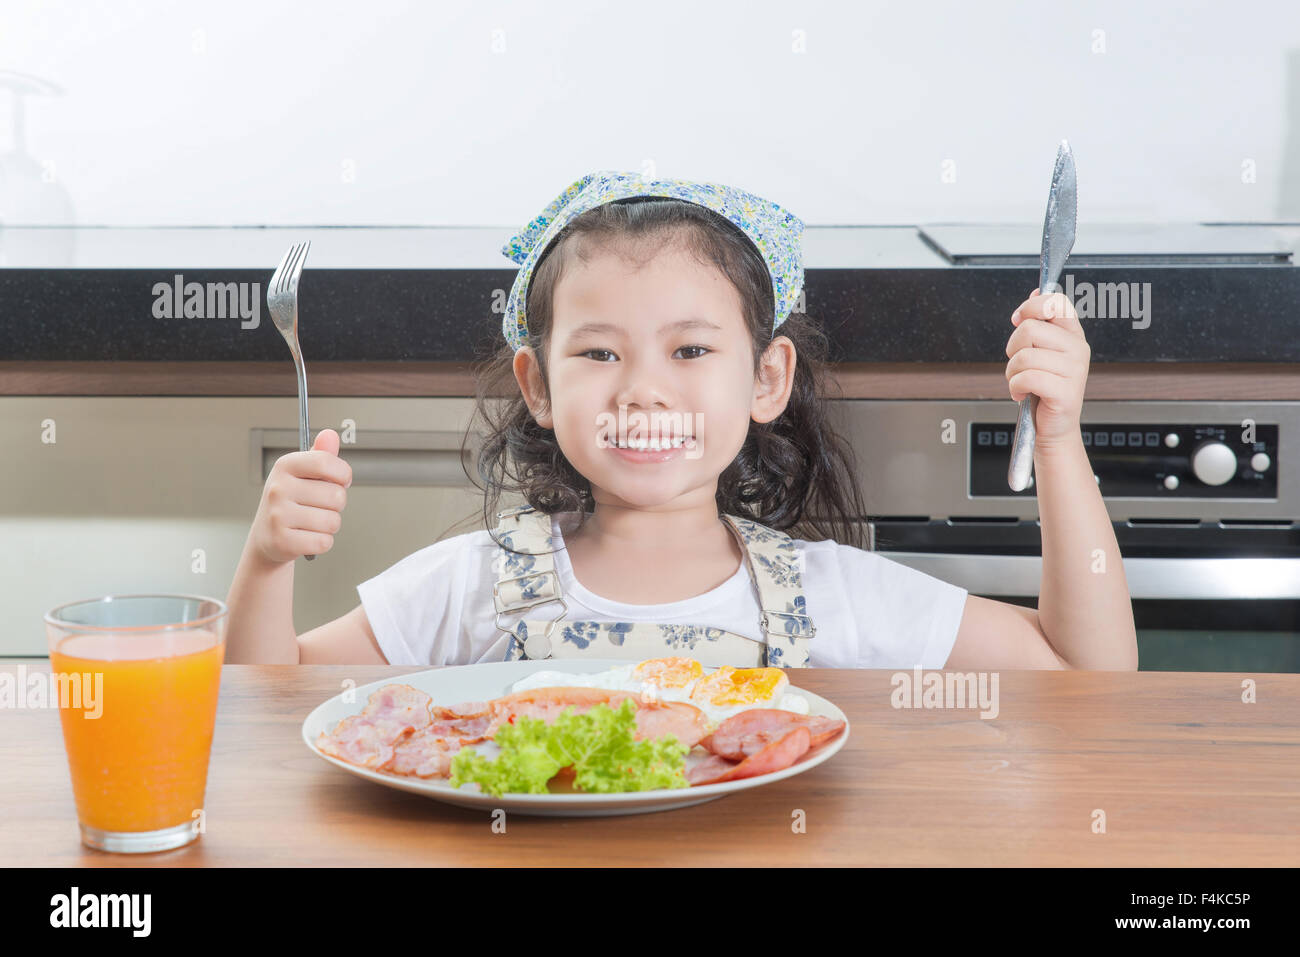 Familie, Kinder und glückliche Menschen Konzept - Asiatin Kind essen amerikanisches Frühstück im Haus Stockfoto